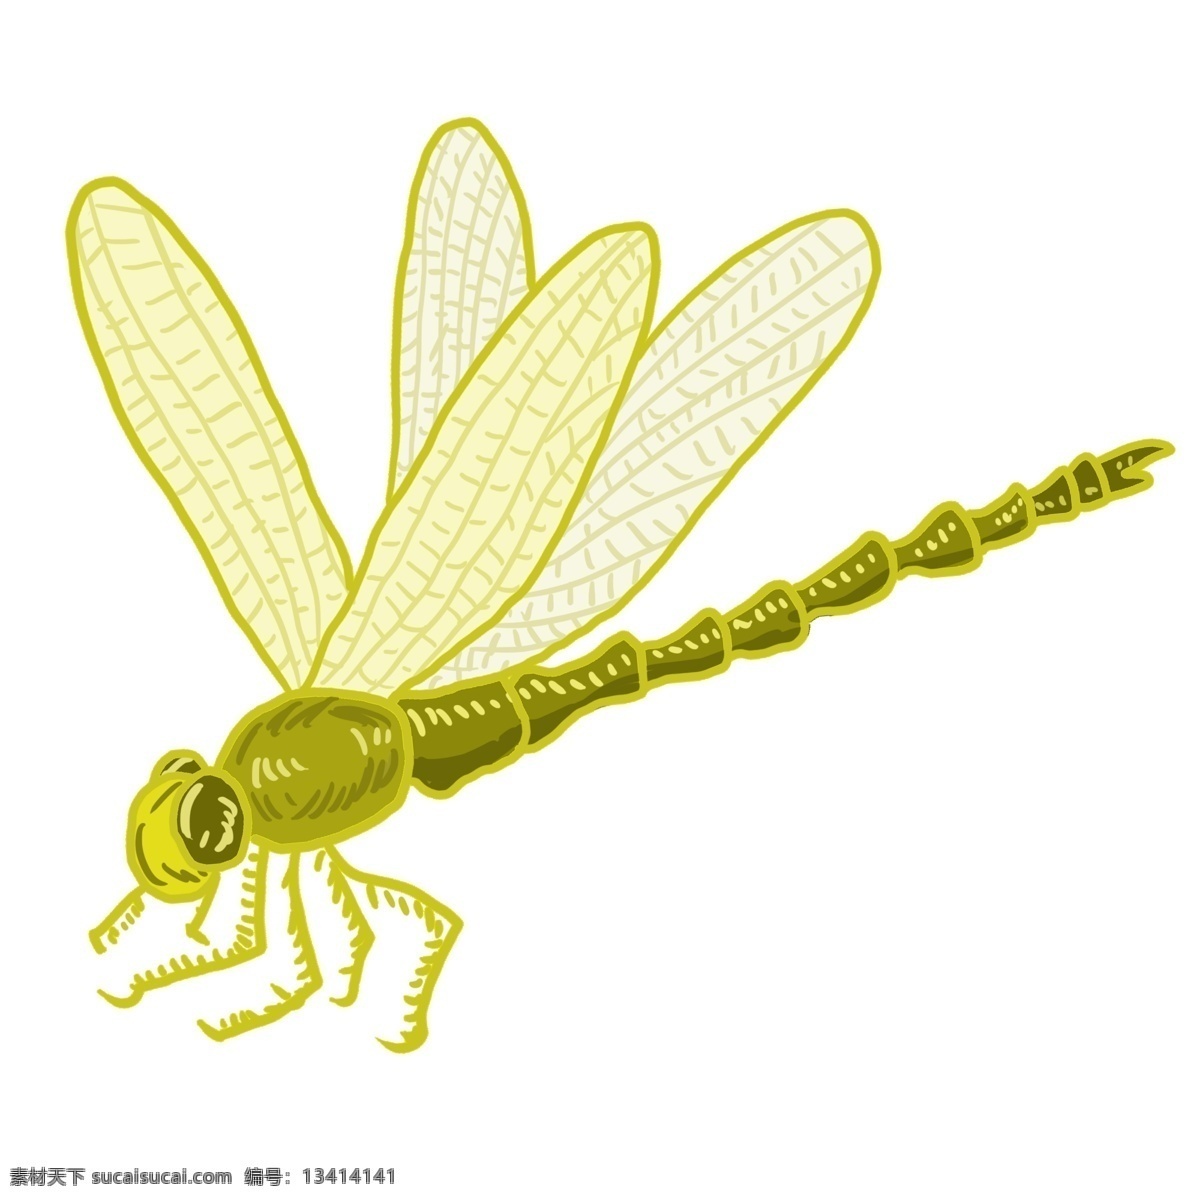 黄色蜻蜓图案 虫子 飞翔 昆虫